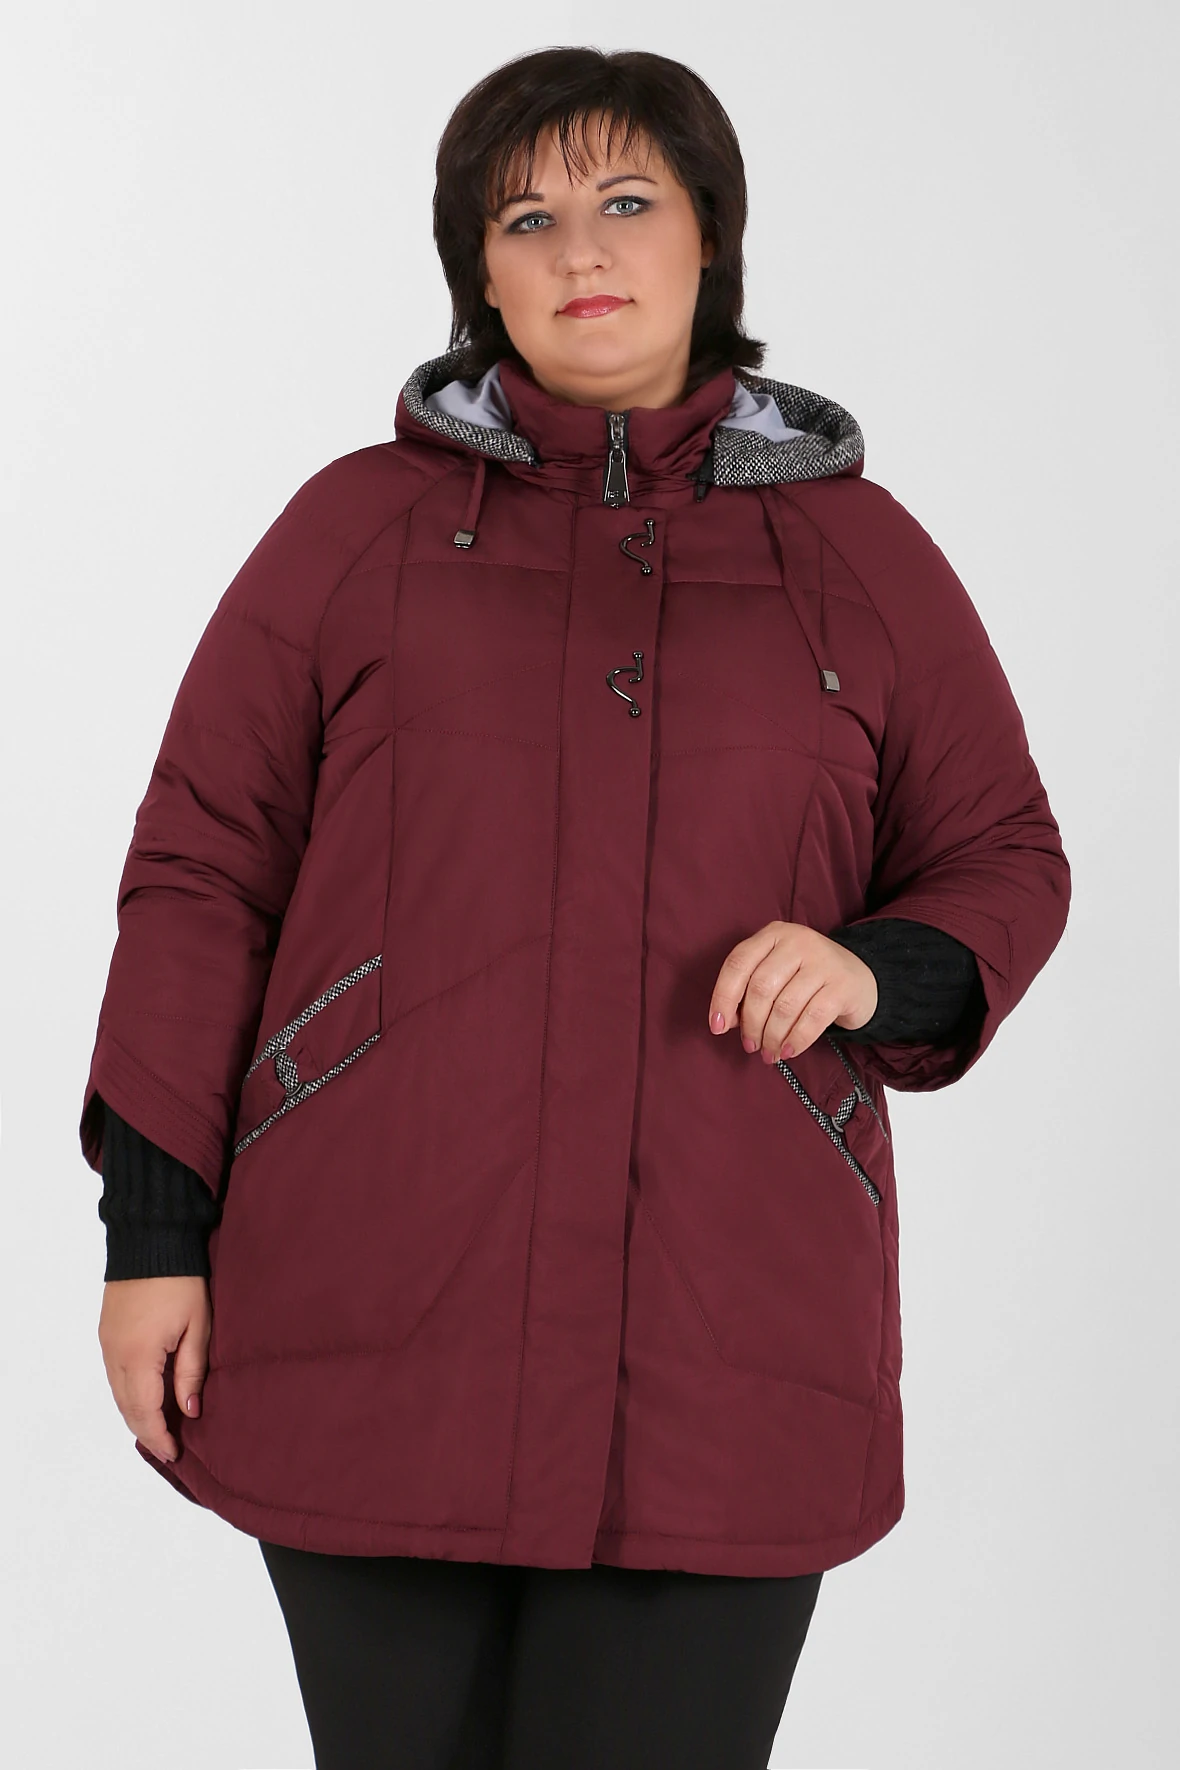 Демисезонная куртка больших размеров для женщин. Mishel утепленная куртка 56 размер. Mishel утепленная куртка 70 размер. Валберис куртки размер 68-70 женские демисезонные. Зимняя куртка женская валберис 60 размер.